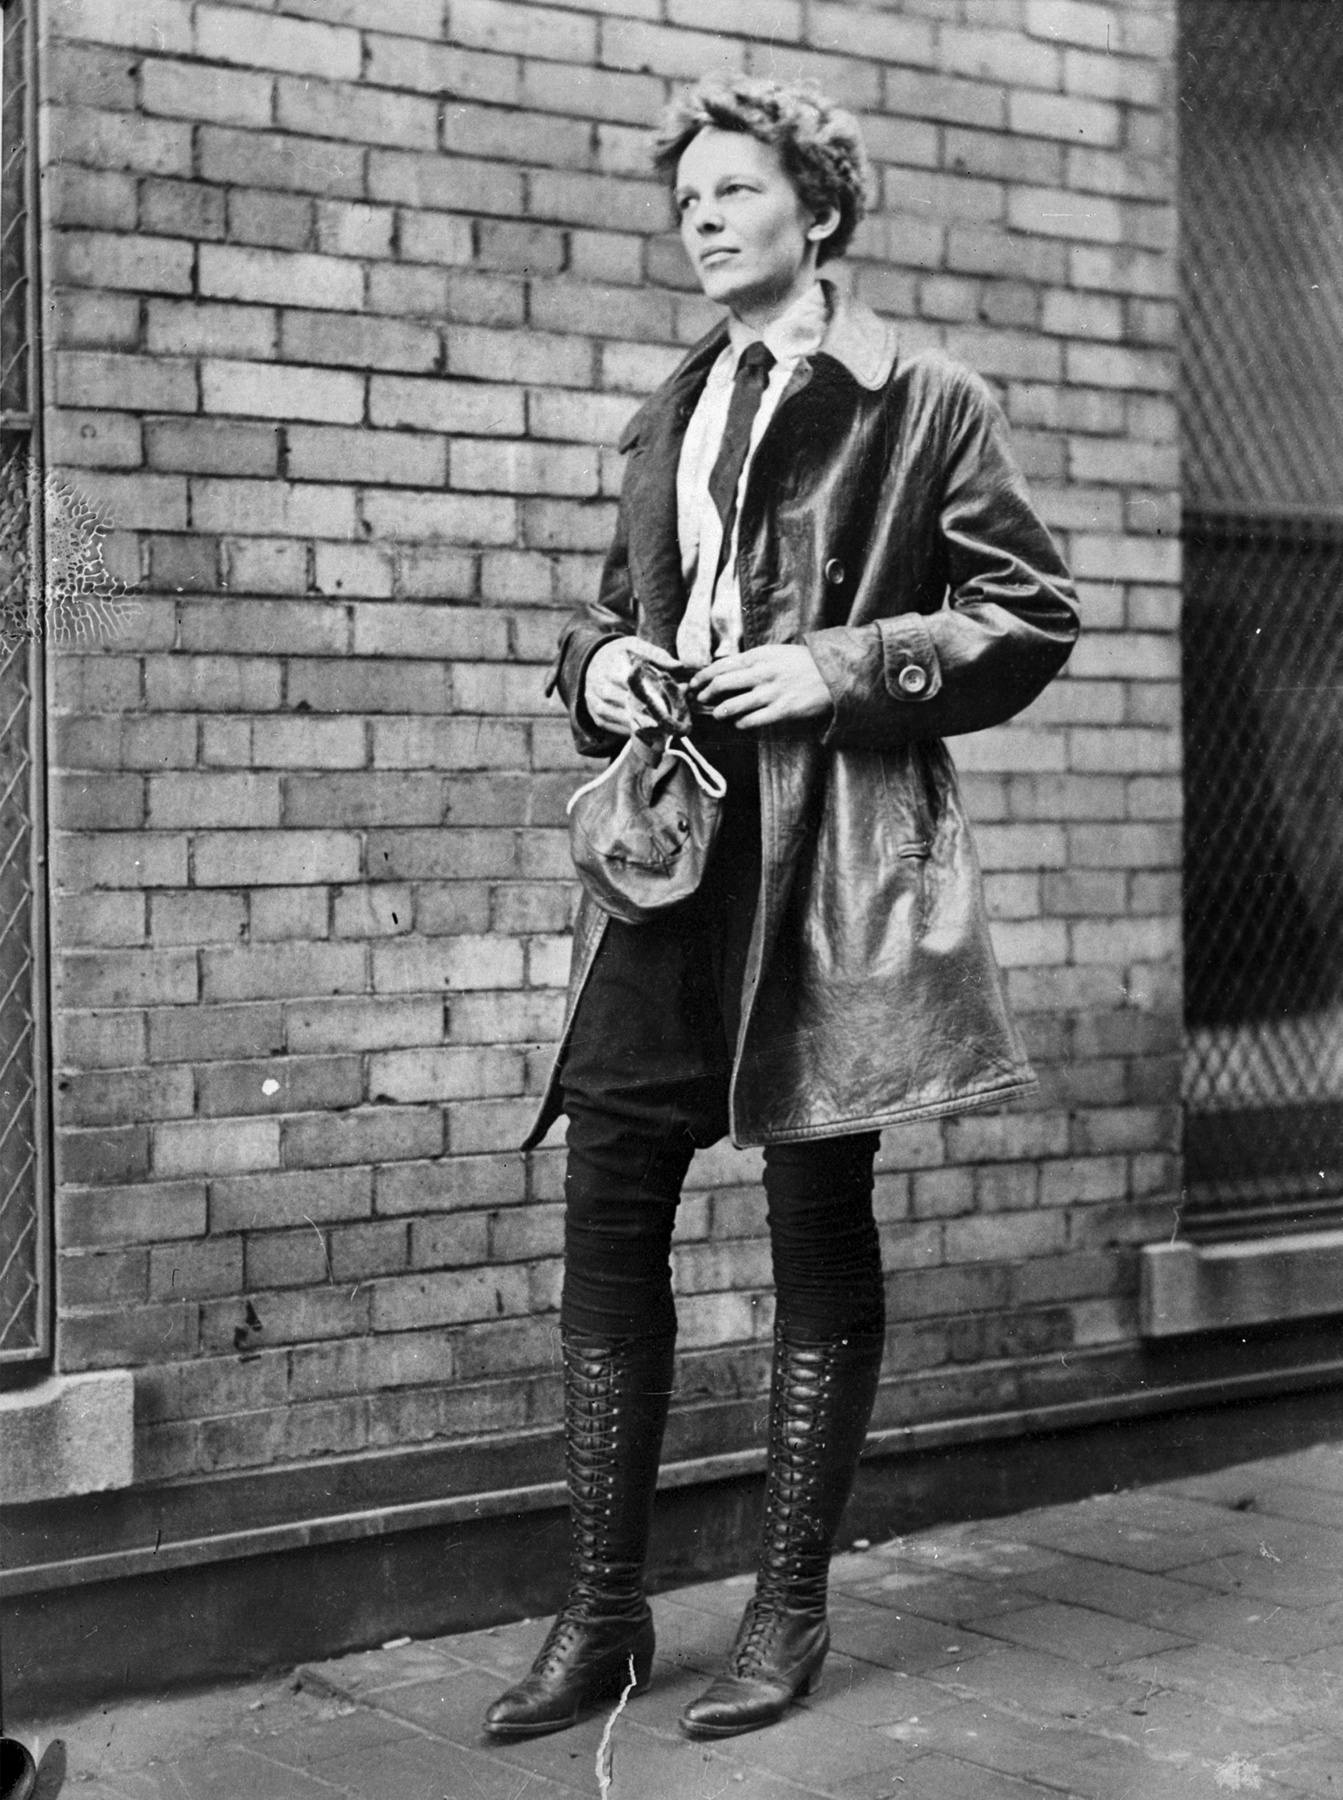 Francoise Hardy 1977-ben lőtt képe akár a ma készült utcai divatfotóként is megállná a helyét, mivel az elmúlt időszakban a legtöbb hírességet és divatbloggert lencsevégre kapták ilyen szabású laza blúzokban és a hetvenes évek stílusát idéző trapéz farmerekben. 